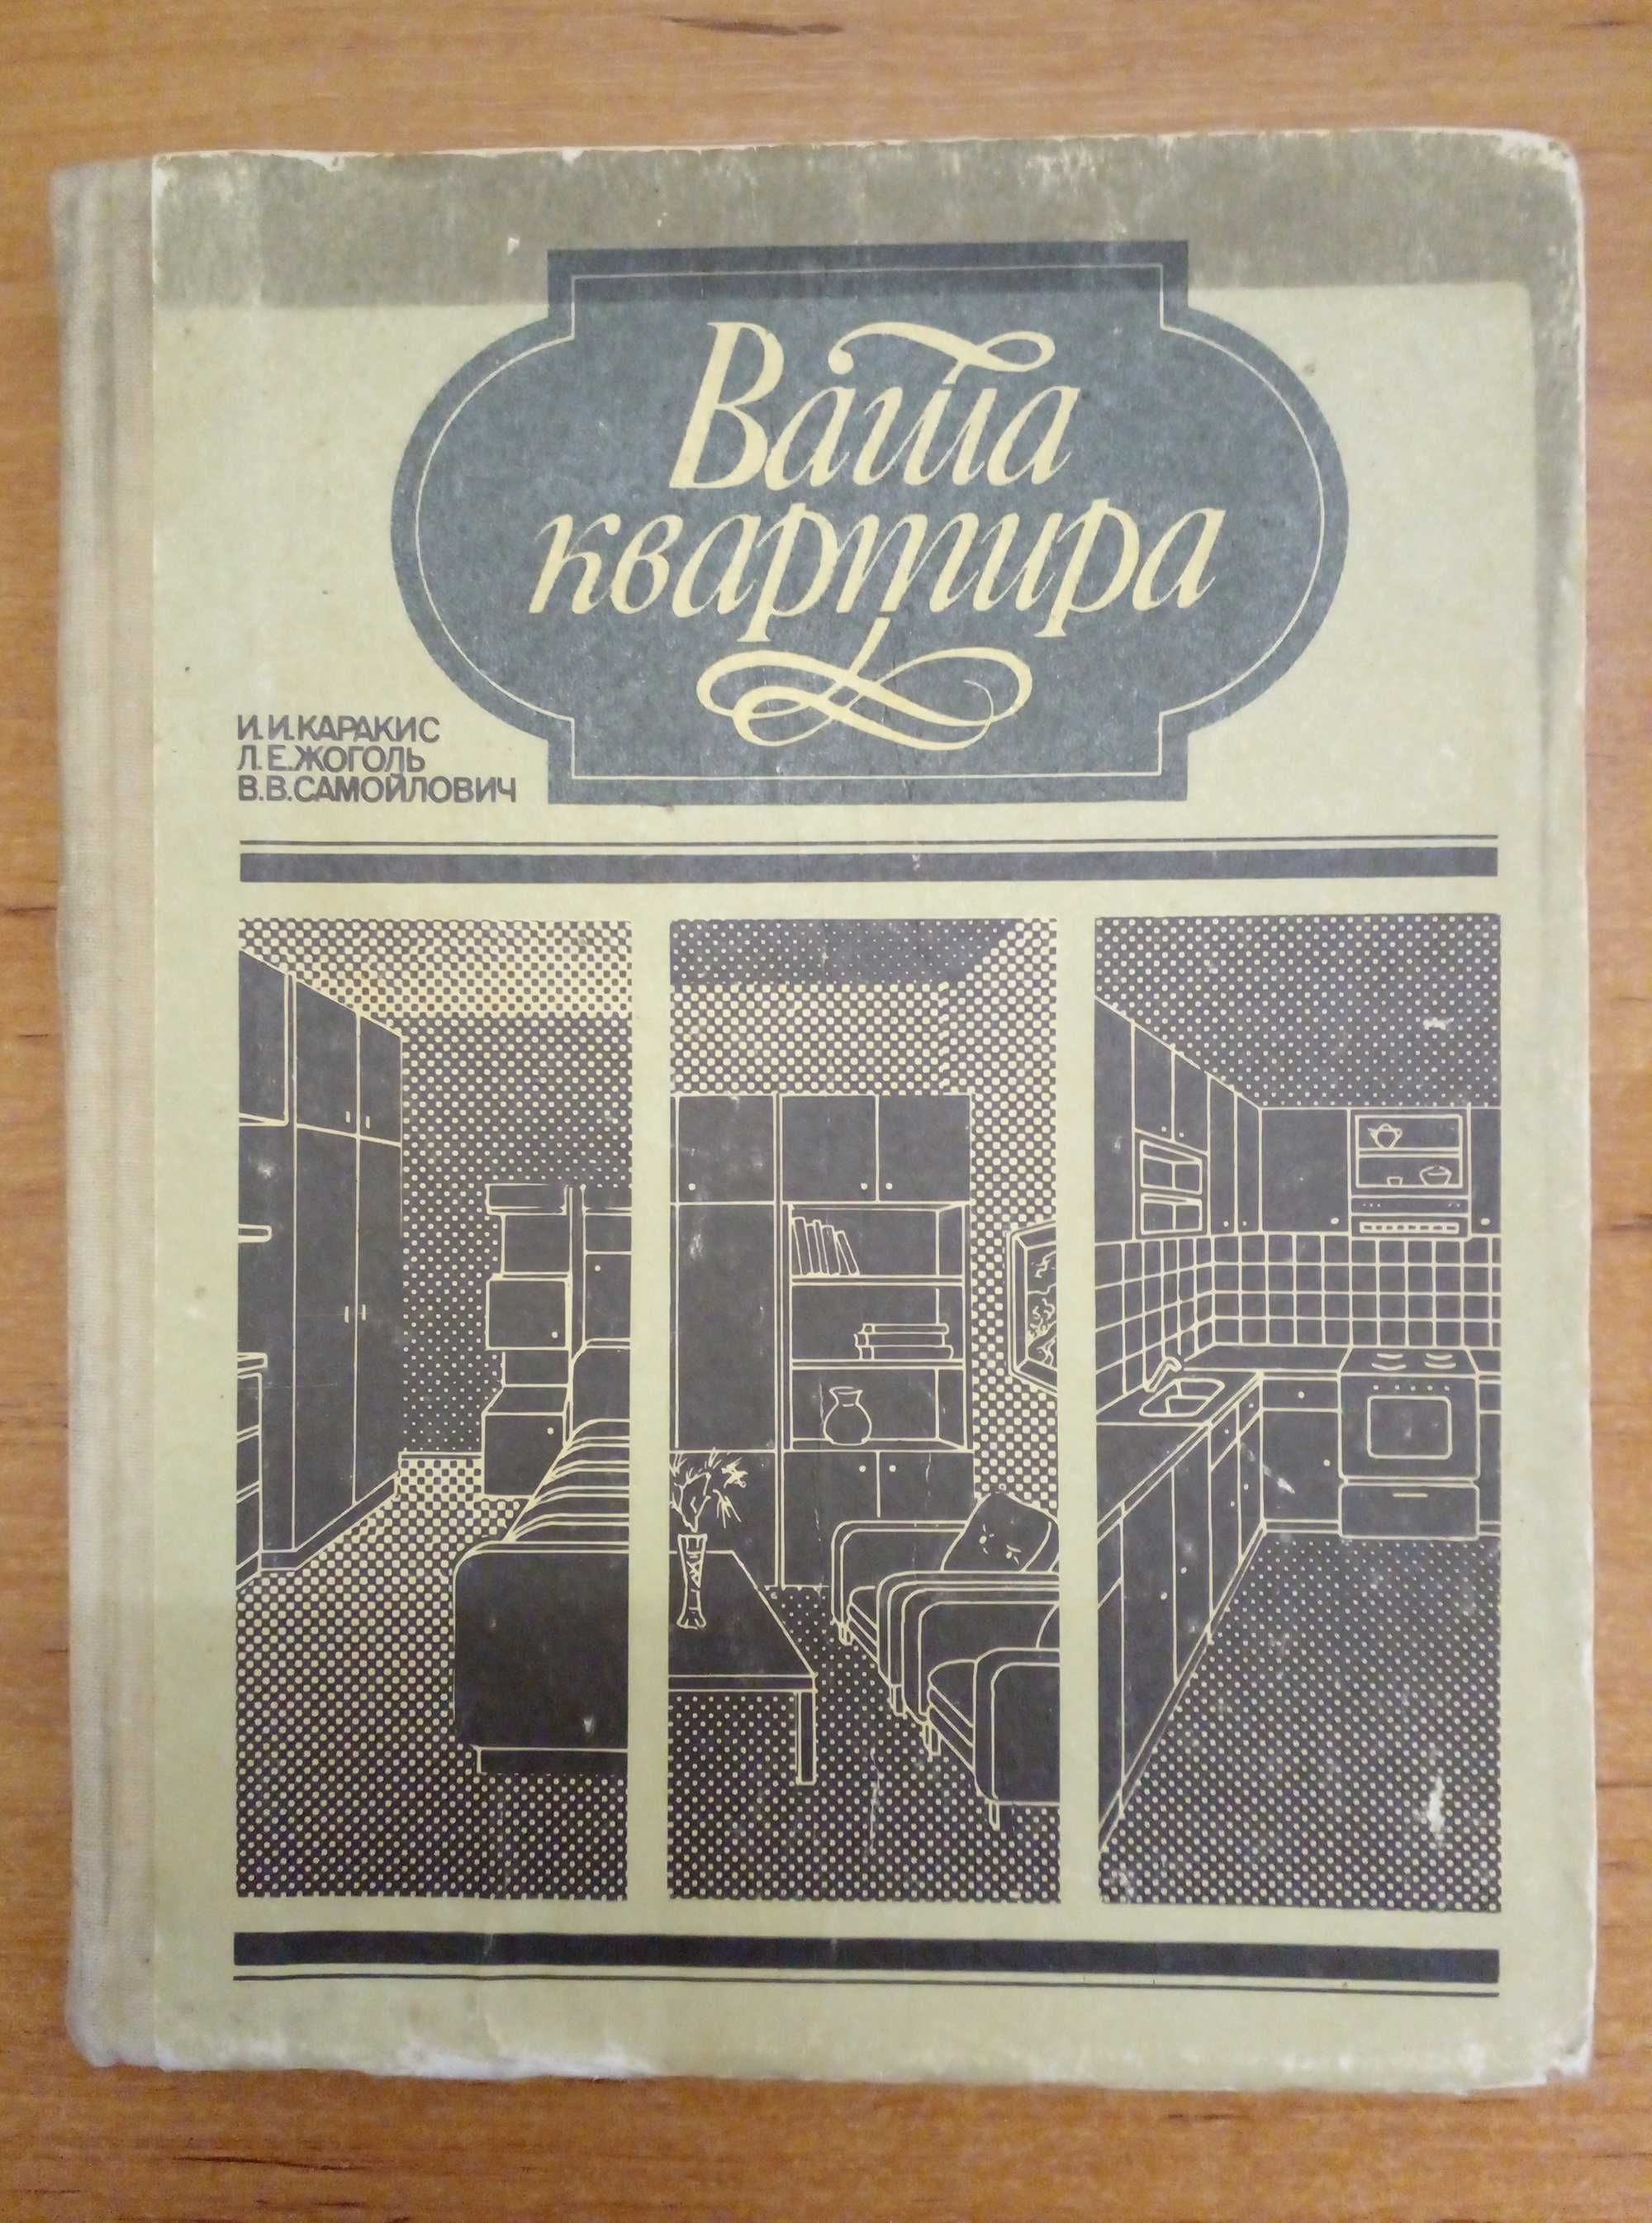 Книга Каракис И.И., Ваша квартира. 1991, увеличенный формат.